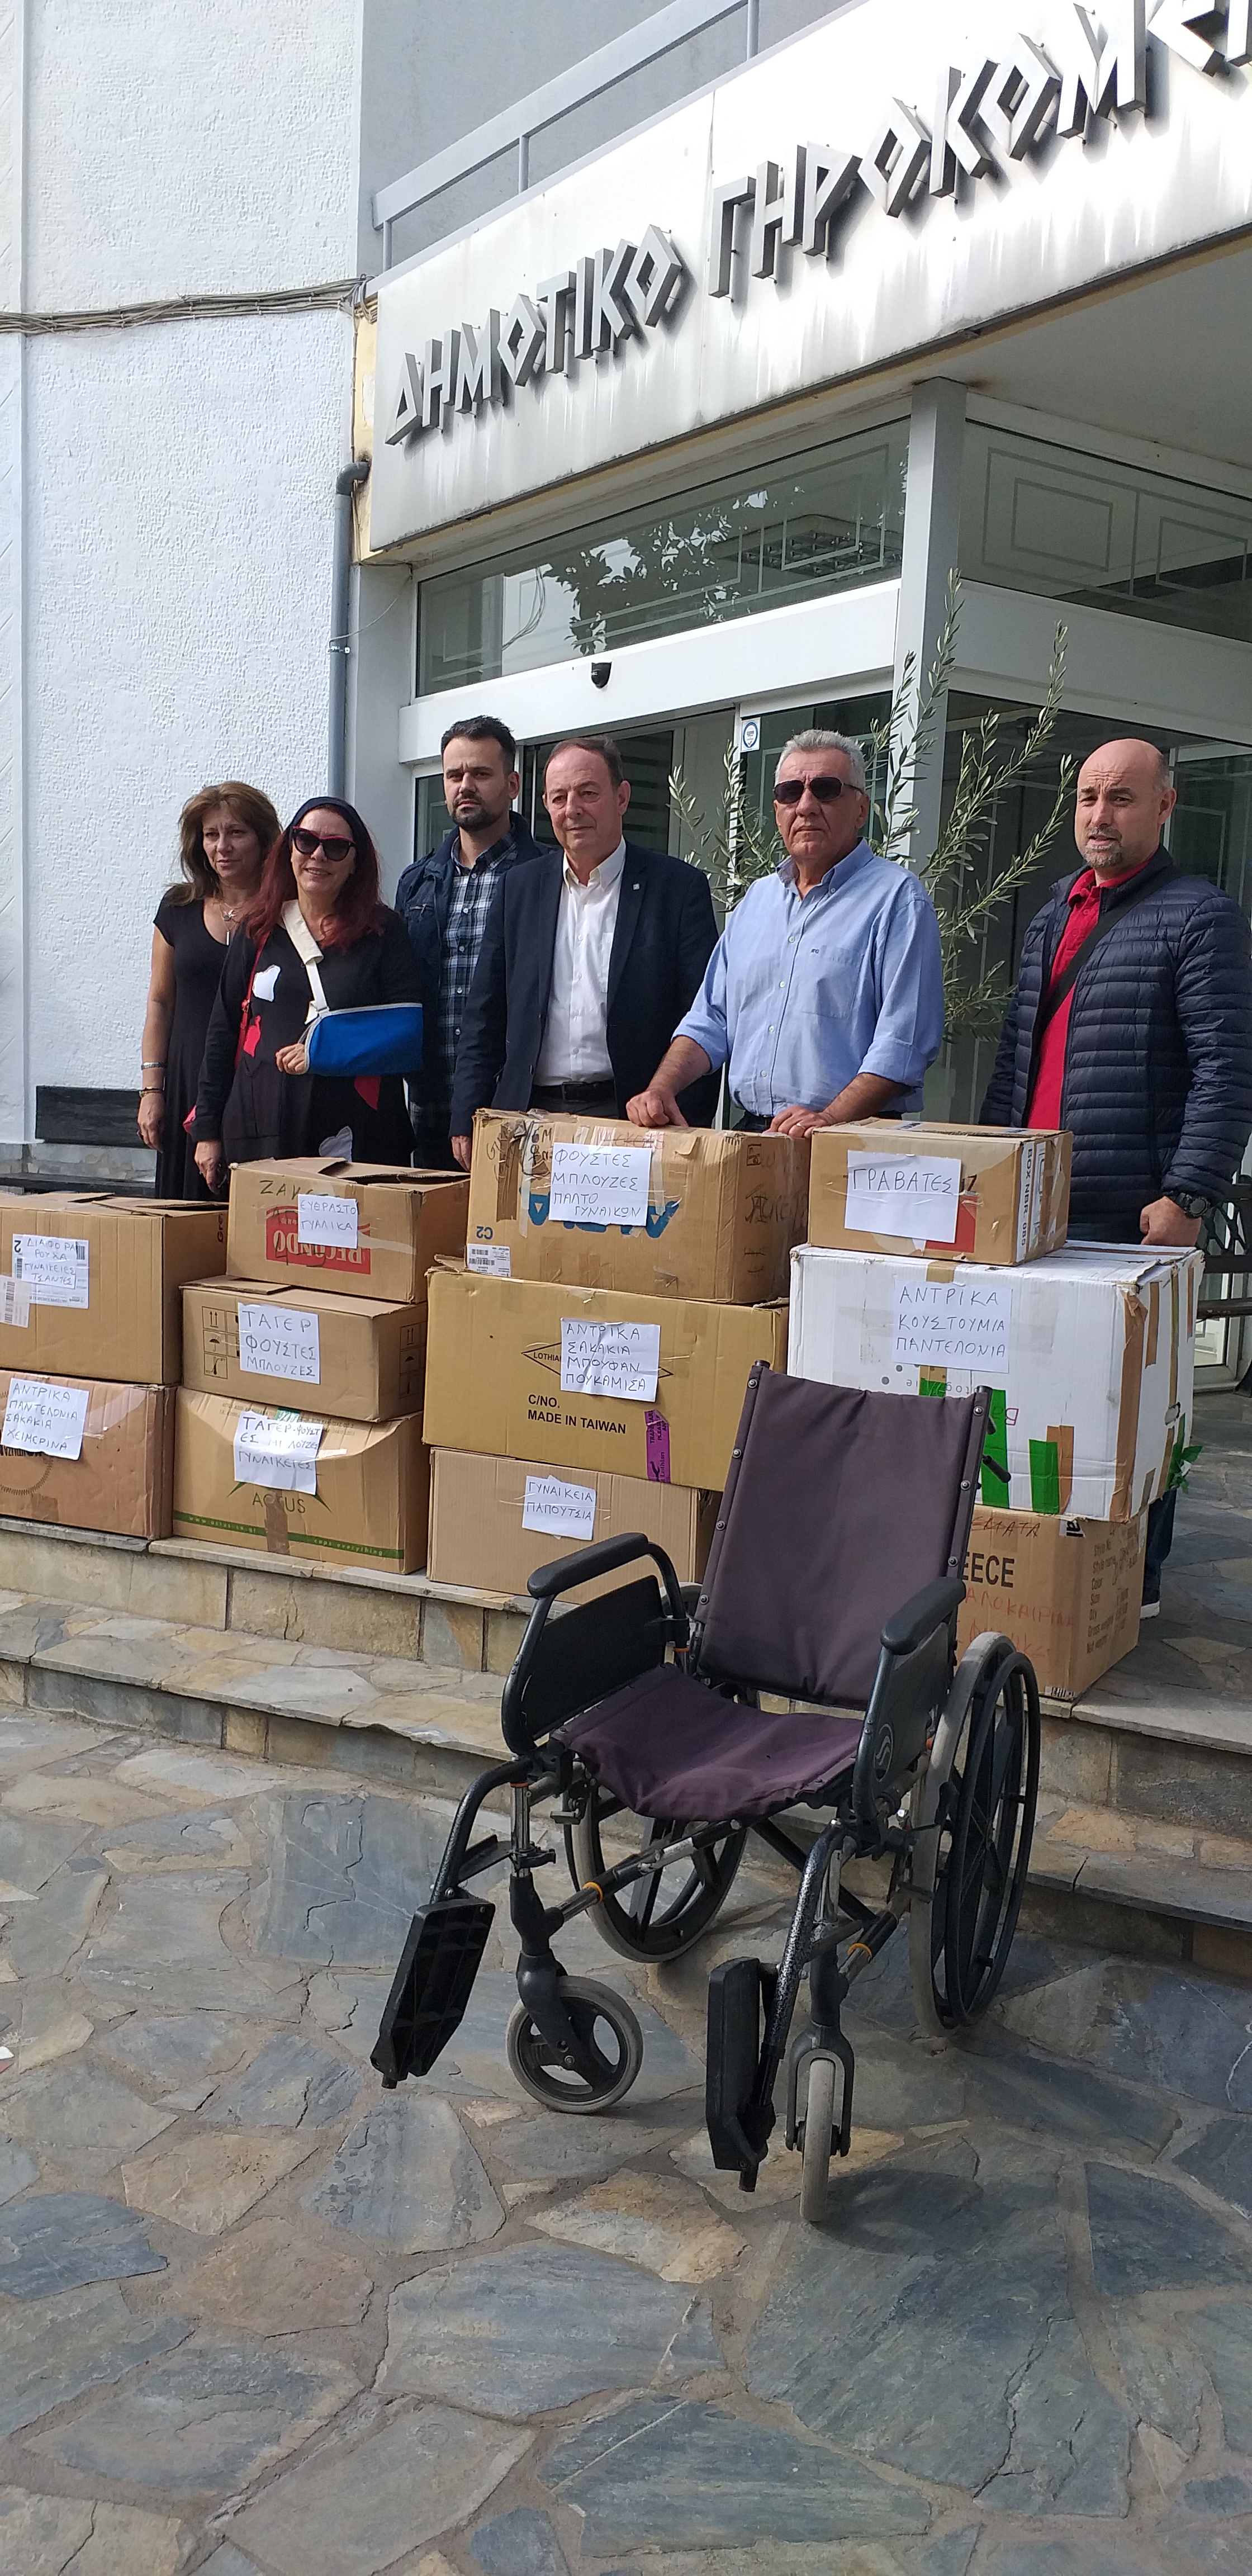 Προσφορά υλικών απο το Δήμο Λαρισαίων στο Γηροκομείο Λάρισας  